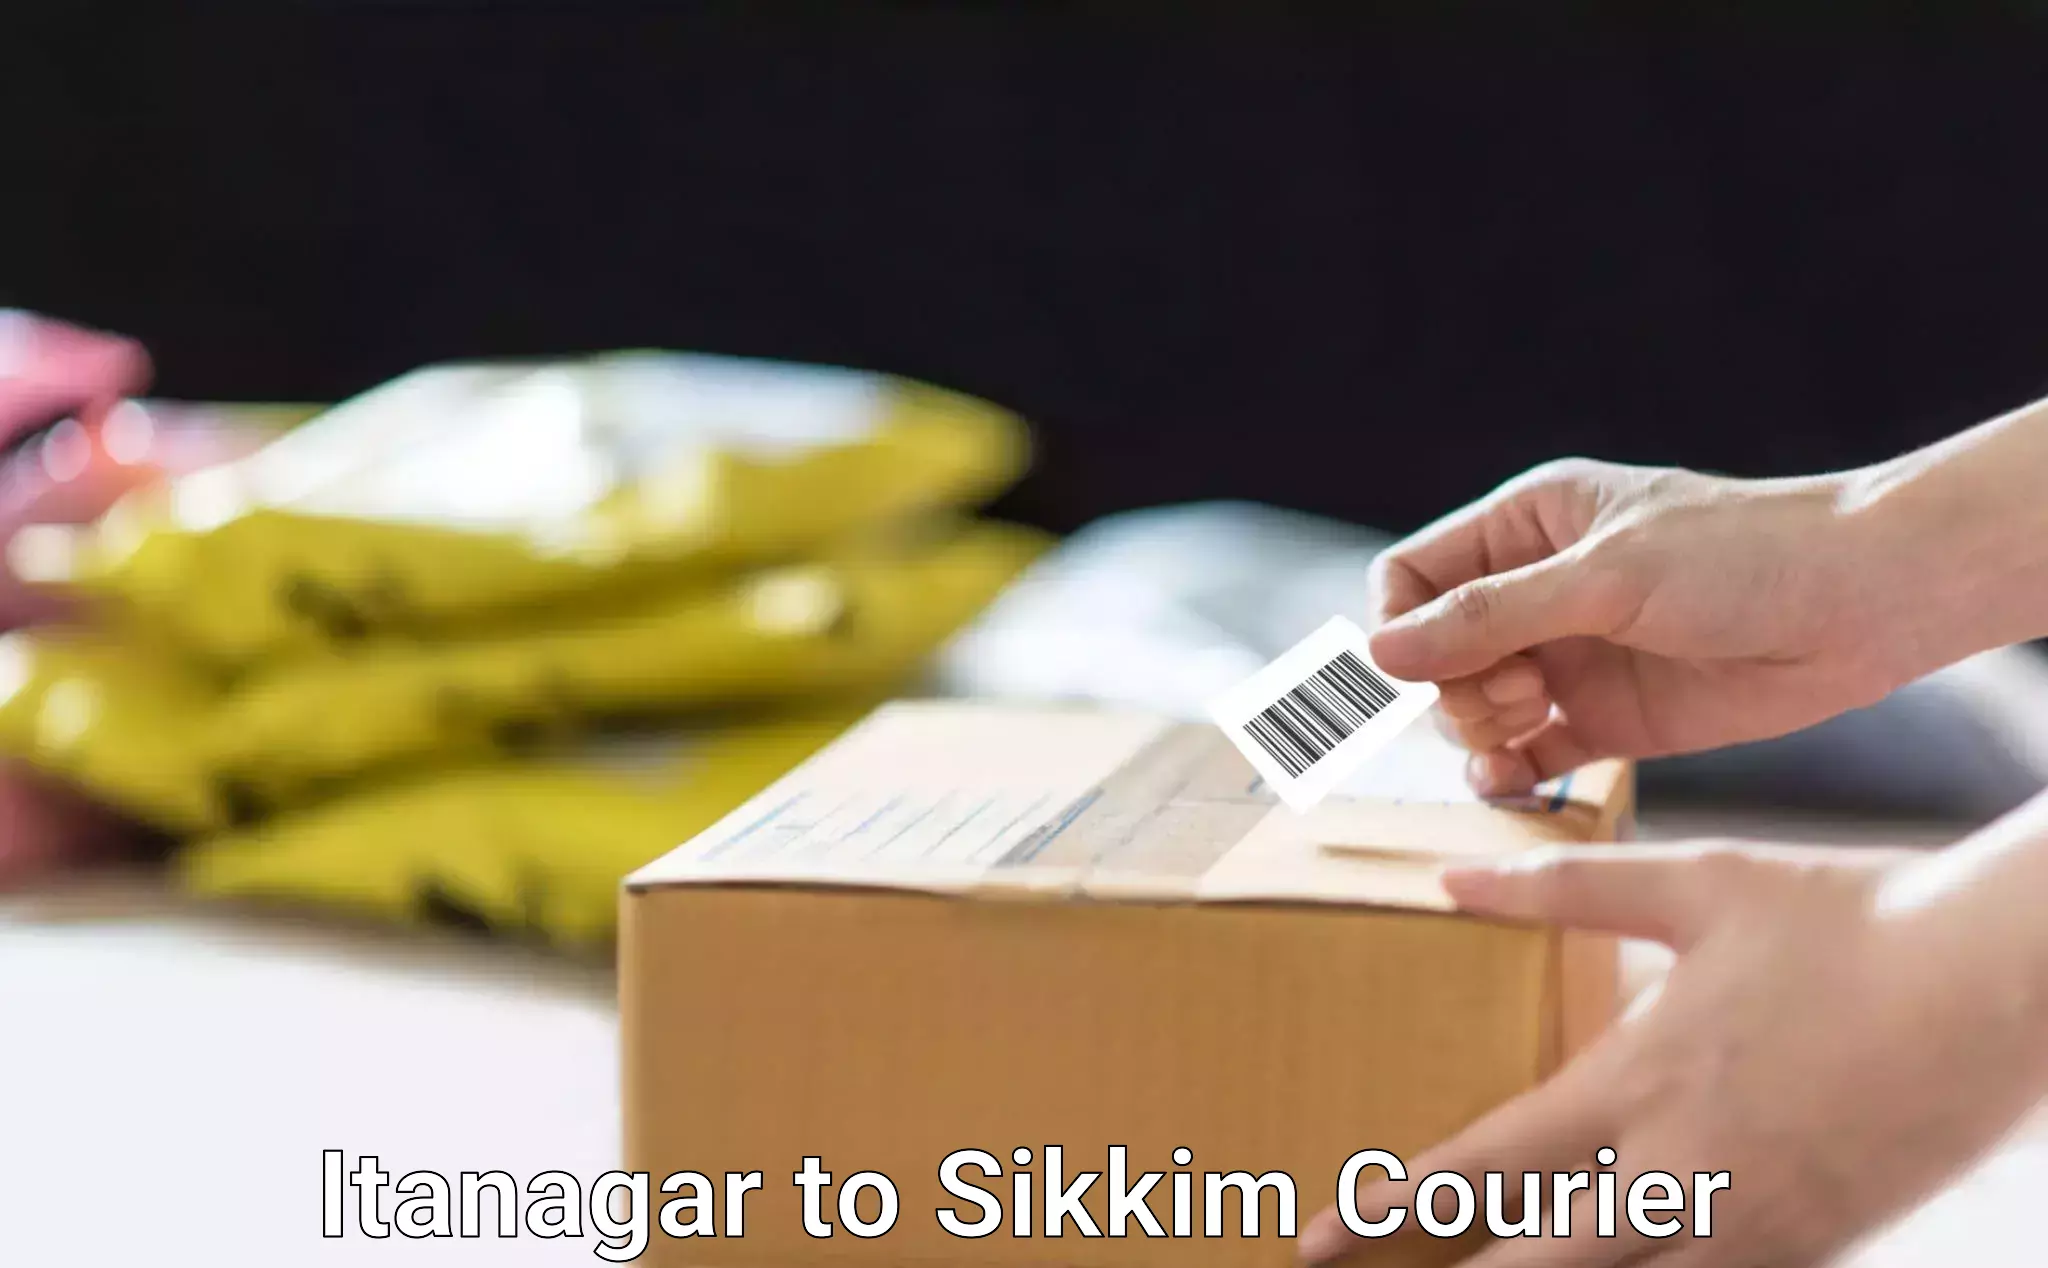 Speedy delivery service in Itanagar to Sikkim